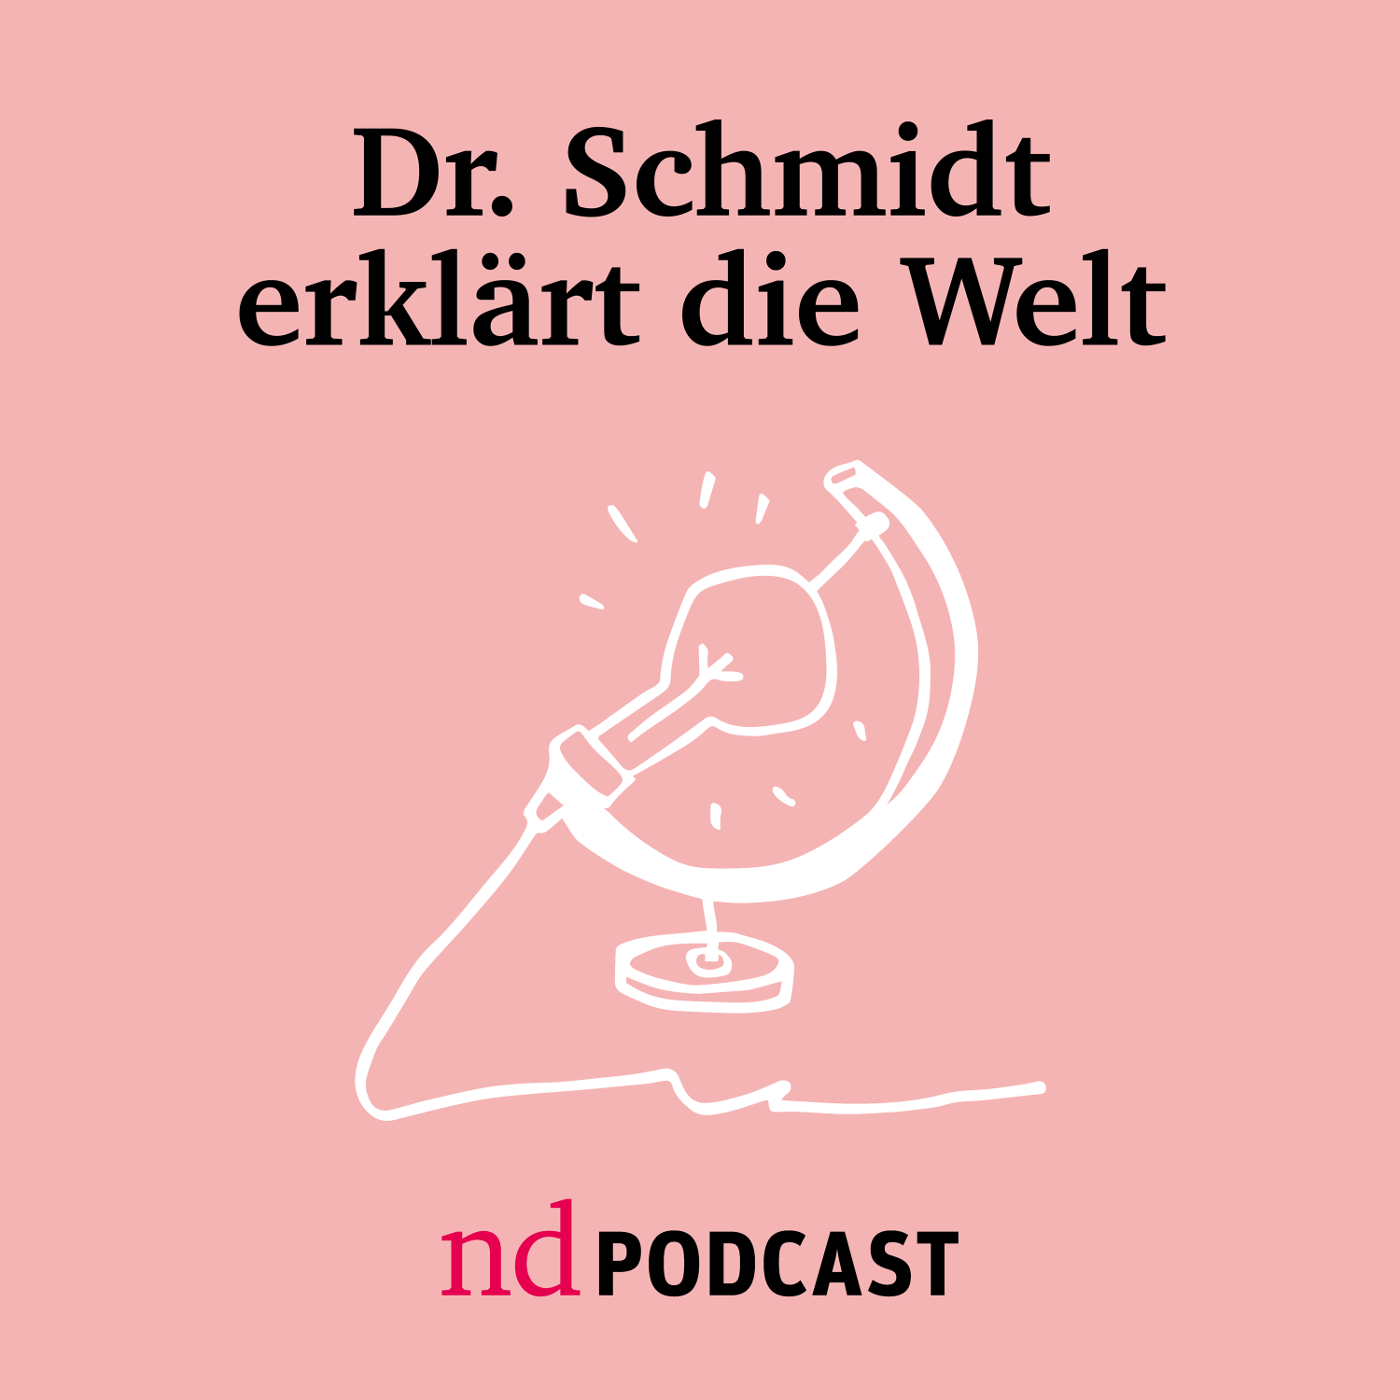 Podcast: Dr. Schmidt erklärt die Welt